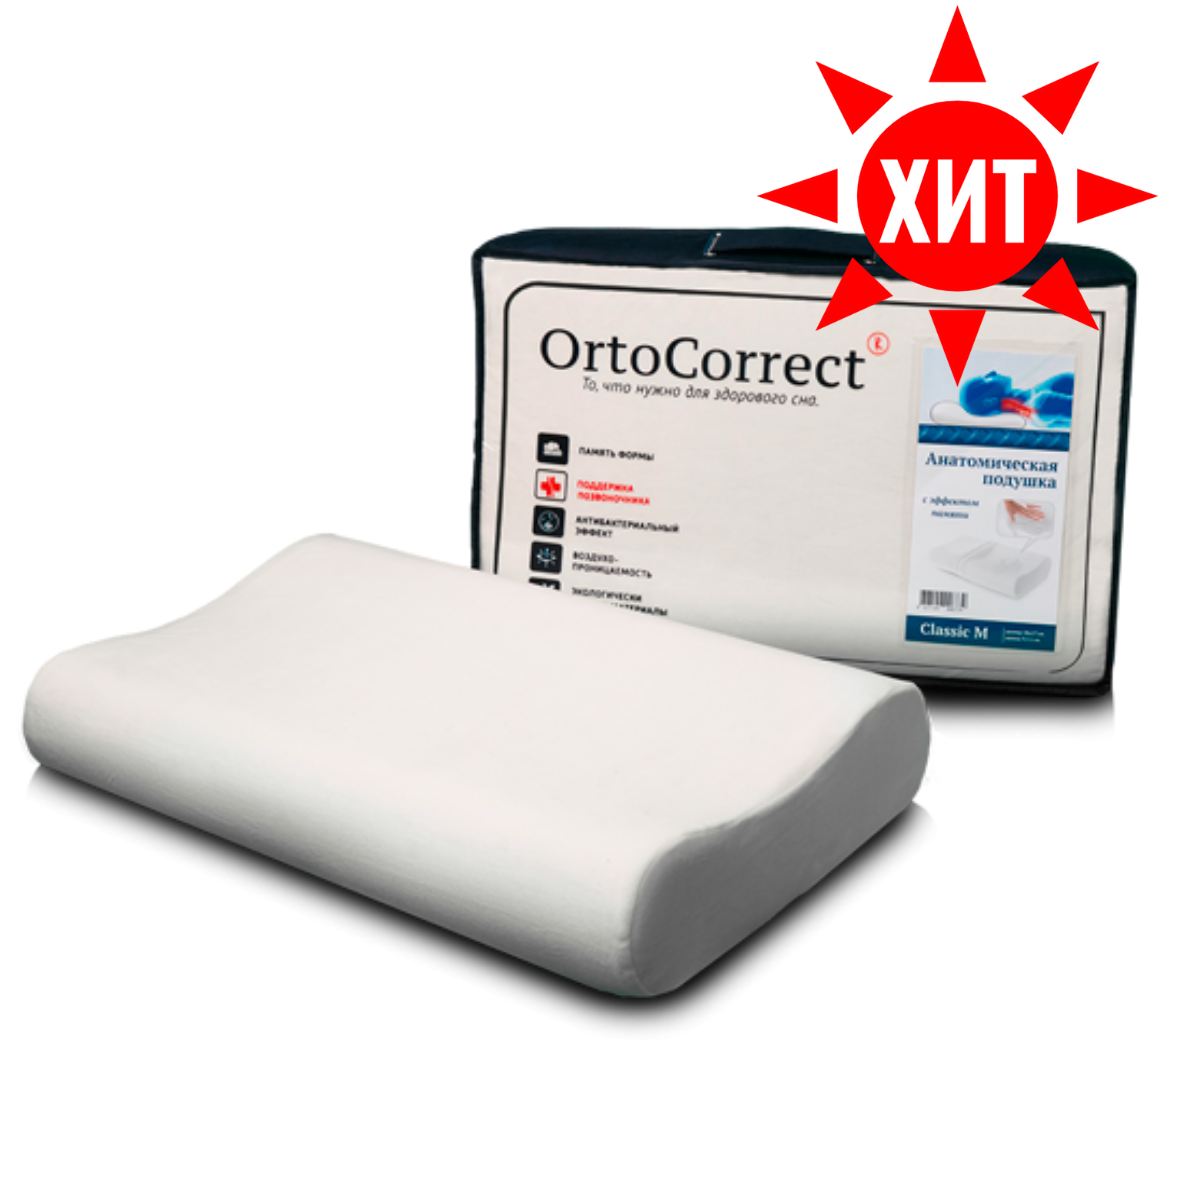 ортопедическая подушка OrtoCorrect